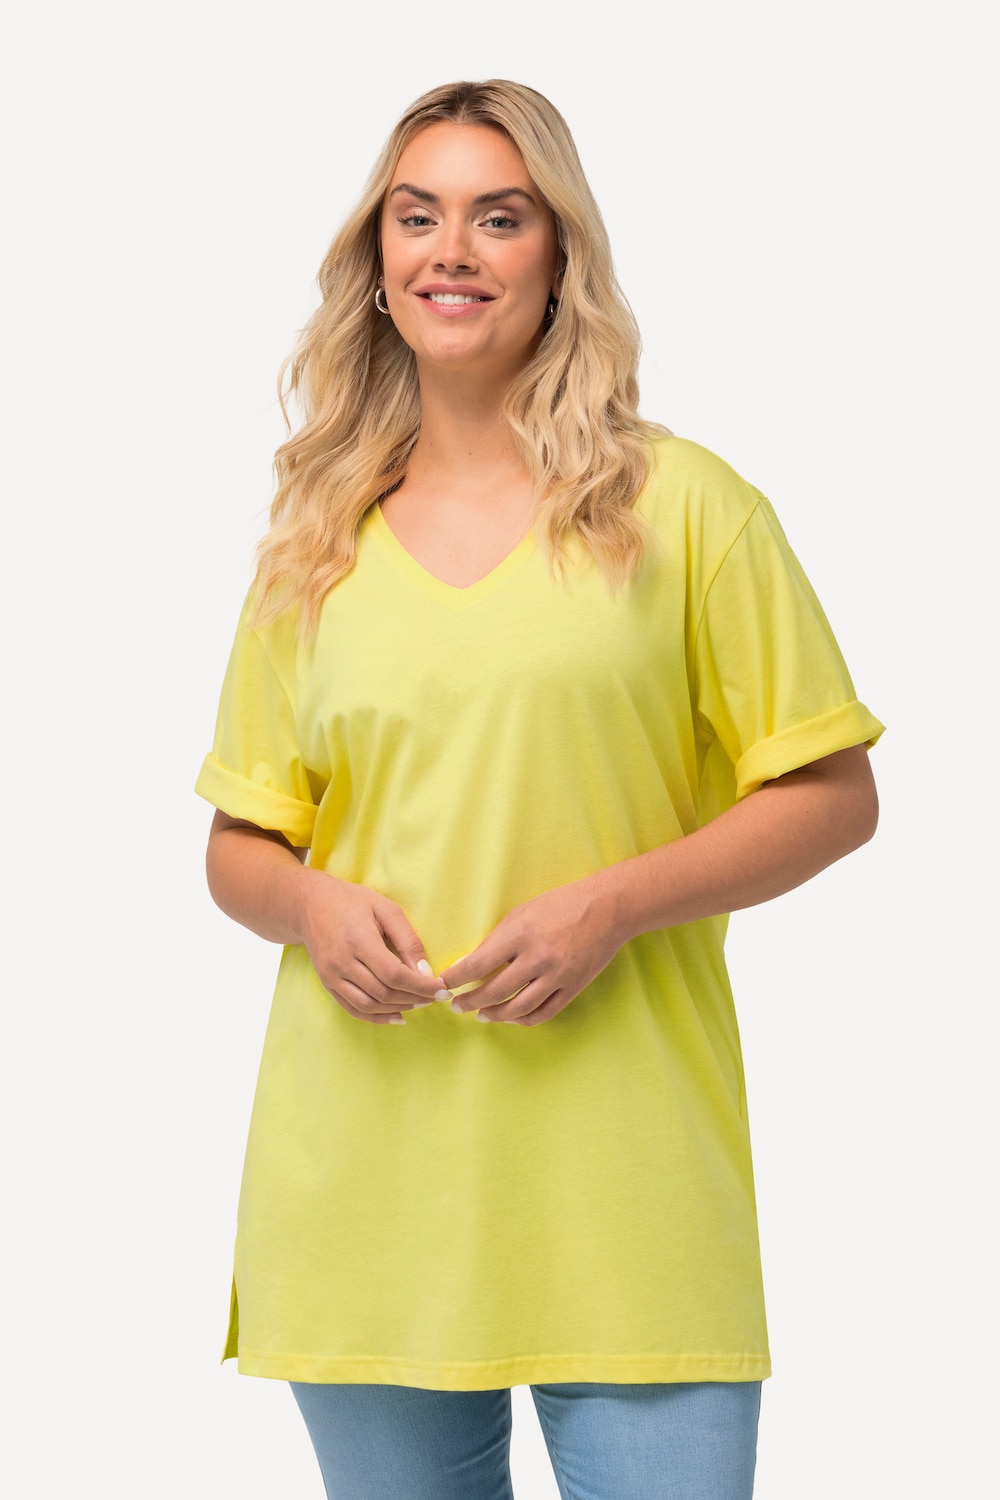 Grote Maten T-Shirt, Dames, geel, Maat: 50/52, Katoen/Viscose, Ulla Popken